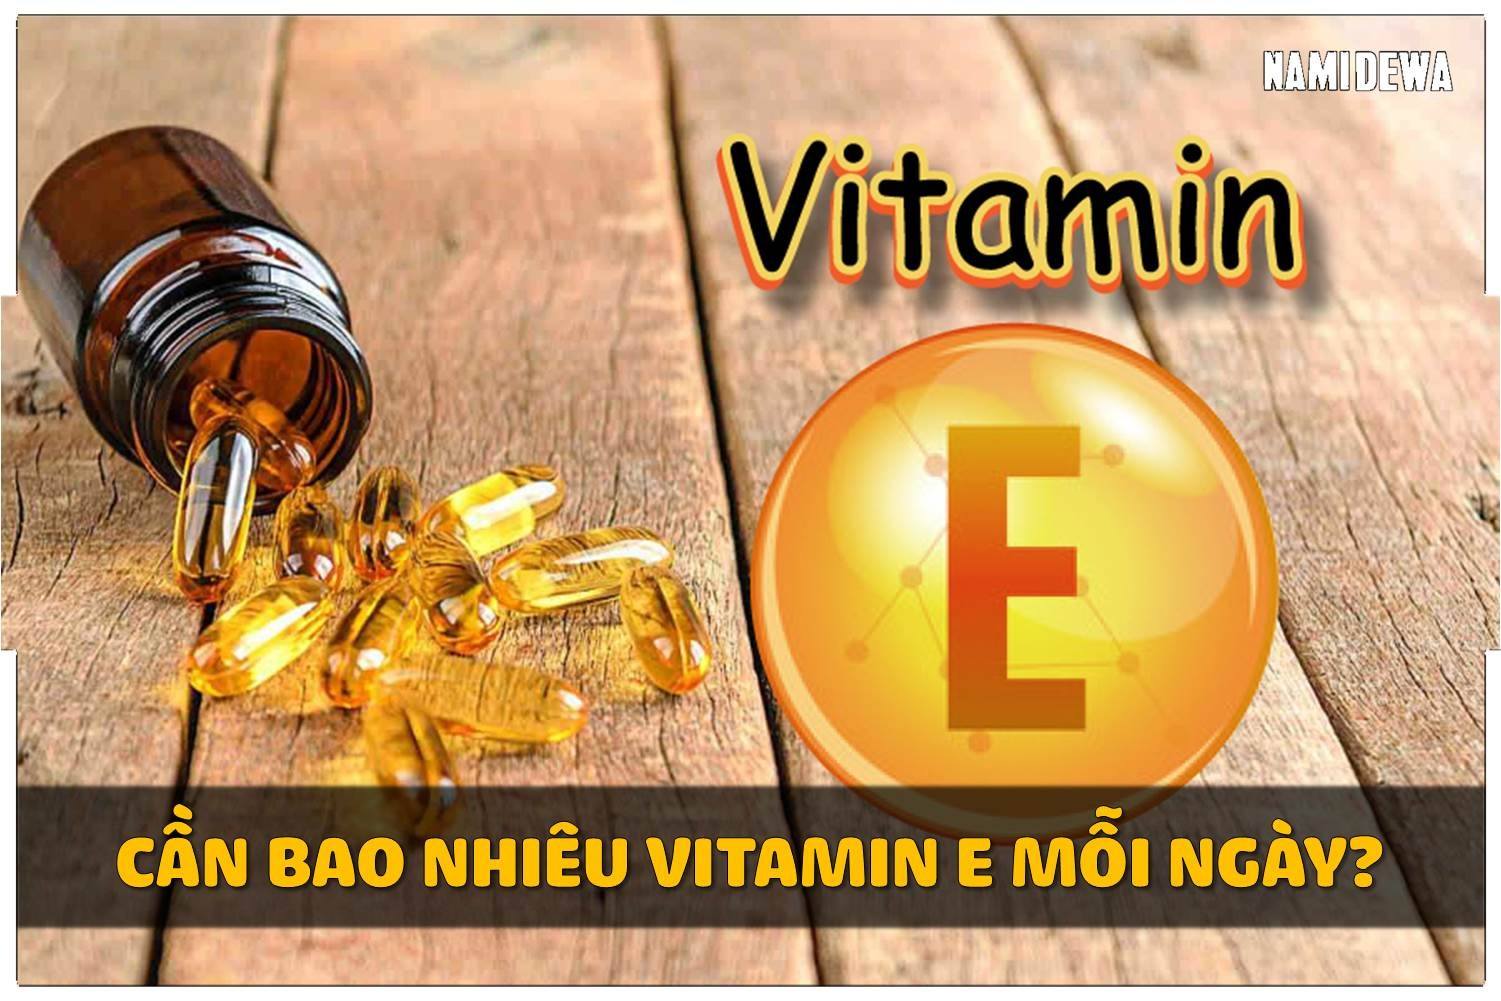 Cơ Thể Chúng Ta Cần Bao Nhiêu Vitamin E Mỗi Ngày?